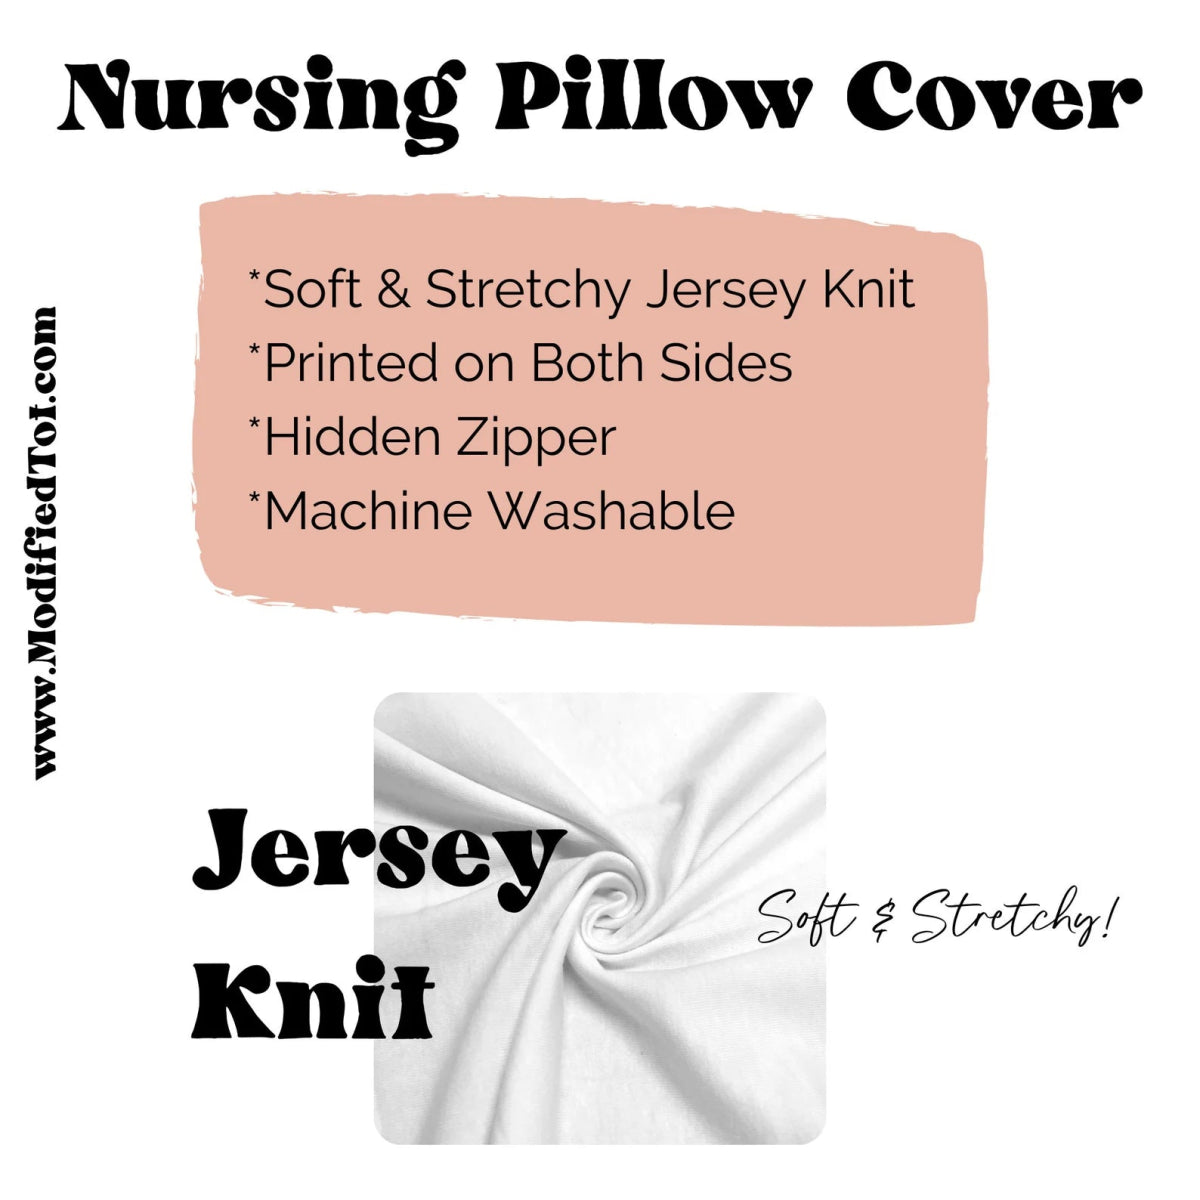 Boho Sunset Rainbow Nursing Pillow Cover - Boho Sunset, gender_girl, Theme_Boho